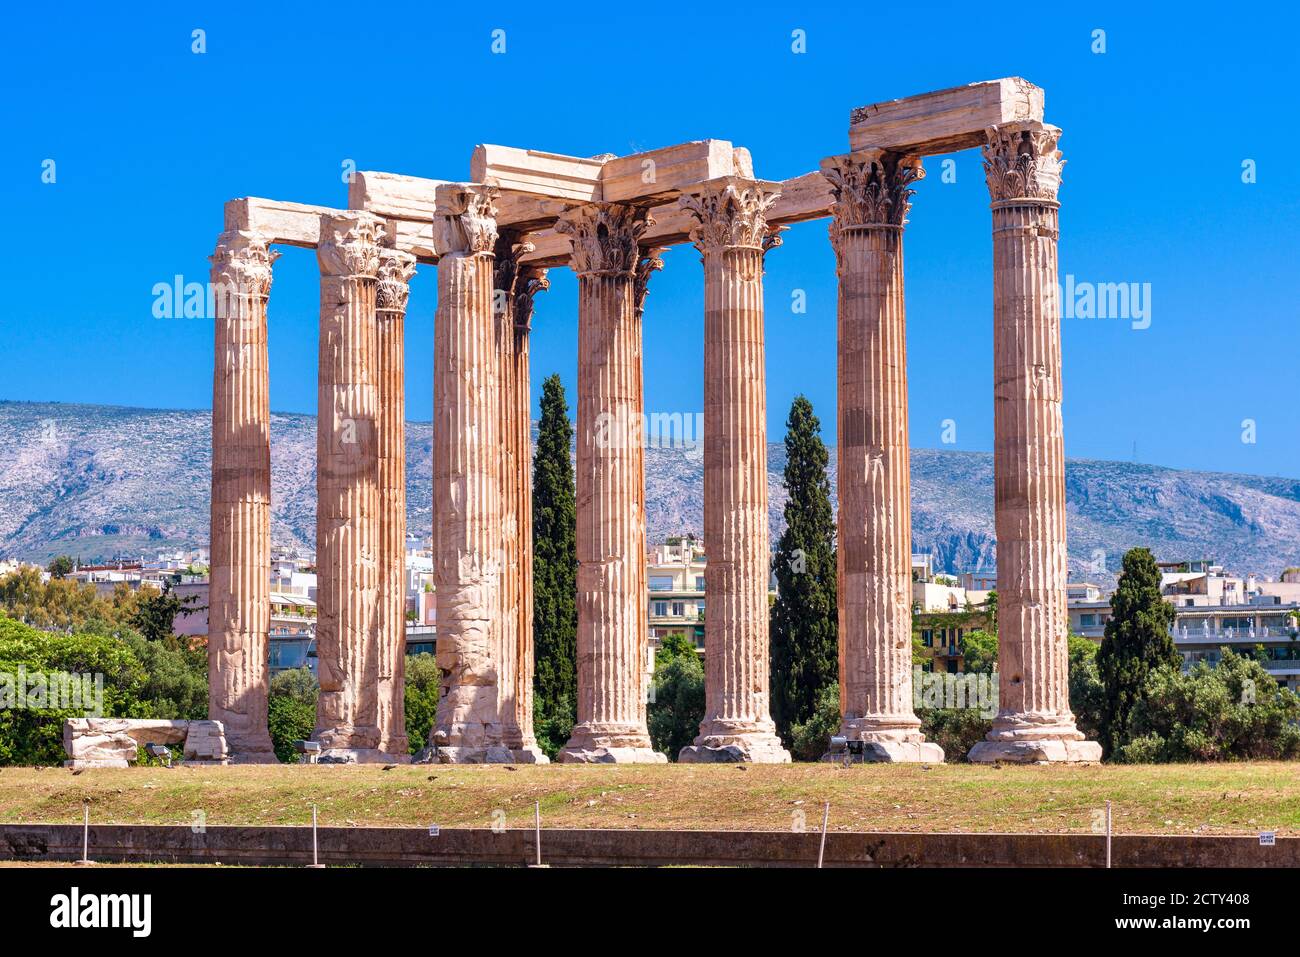 Zeus Tempel, majestätische antike griechische Ruinen in Athen, Griechenland. Es ist eines der Top-Wahrzeichen von Athen. Große Säulen des berühmten Olympian Zeus Gebäude in EINEM Stockfoto